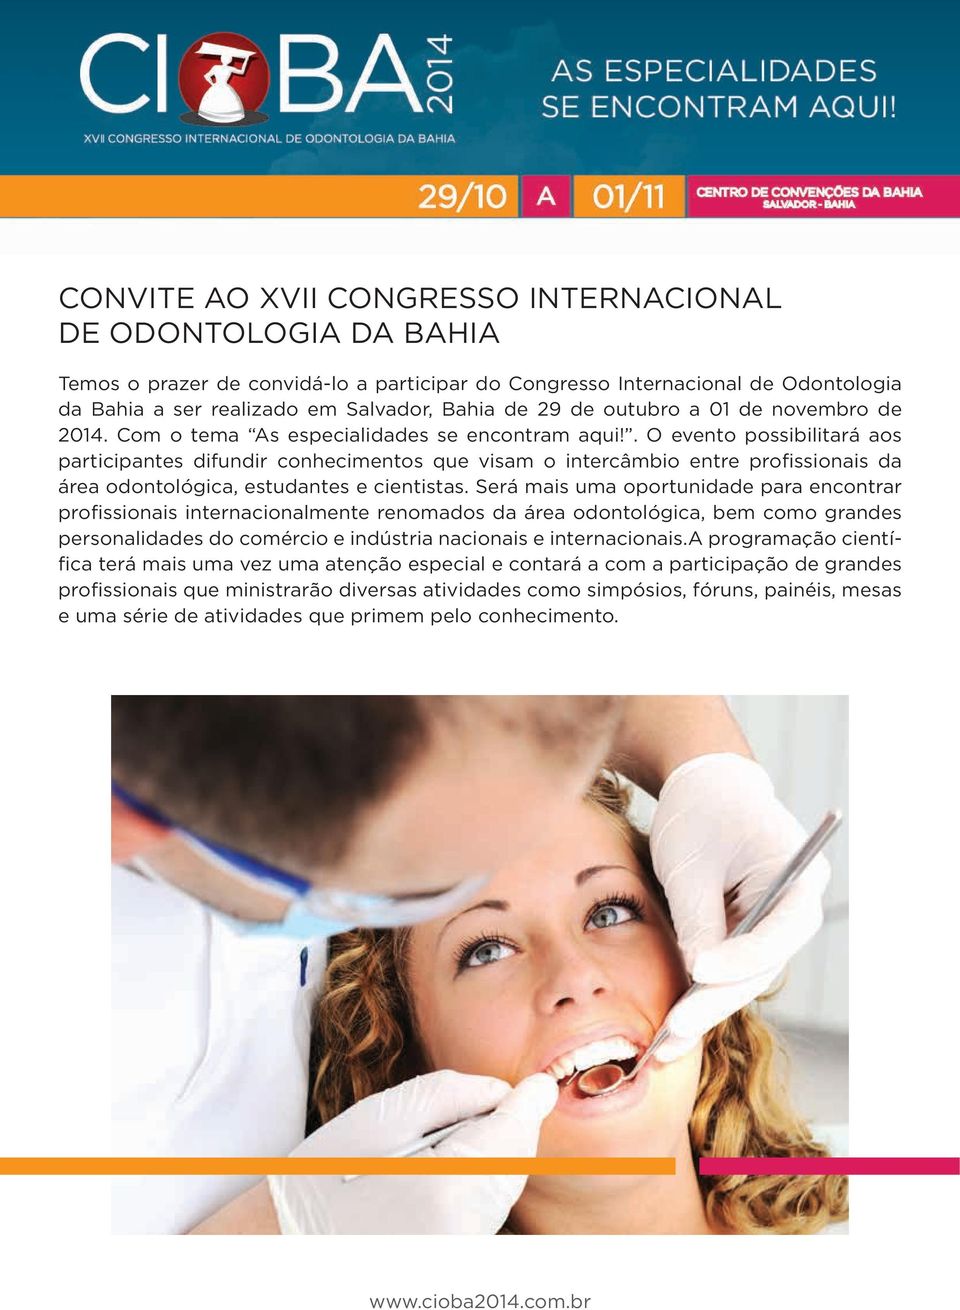 . O evento possibilitará aos participantes difundir conhecimentos que visam o intercâmbio entre profissionais da área odontológica, estudantes e cientistas.